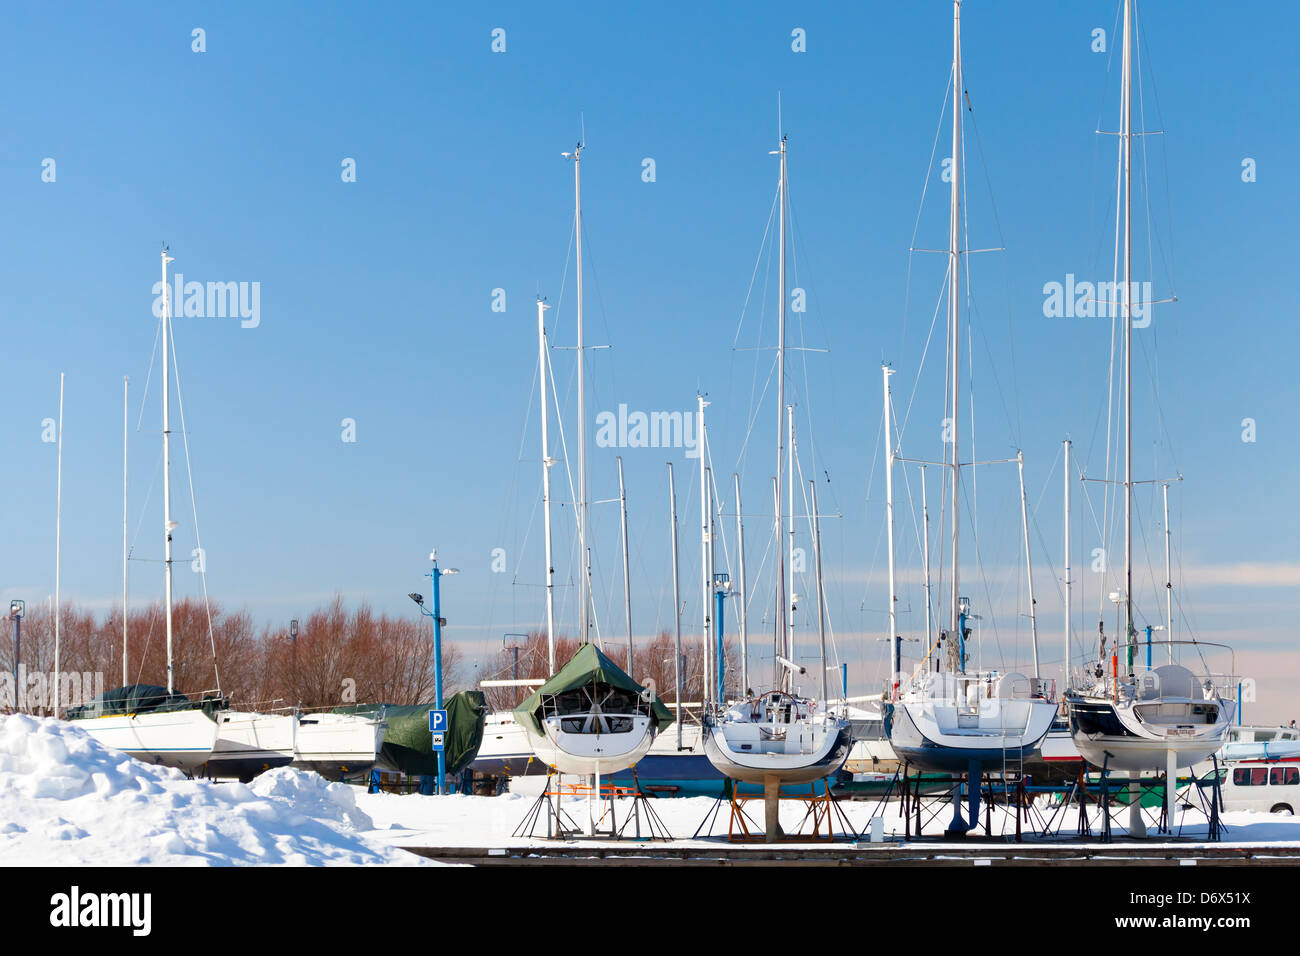 Luxury yachts on the coast in winter season. Tallinn, Estonia Stock Photo